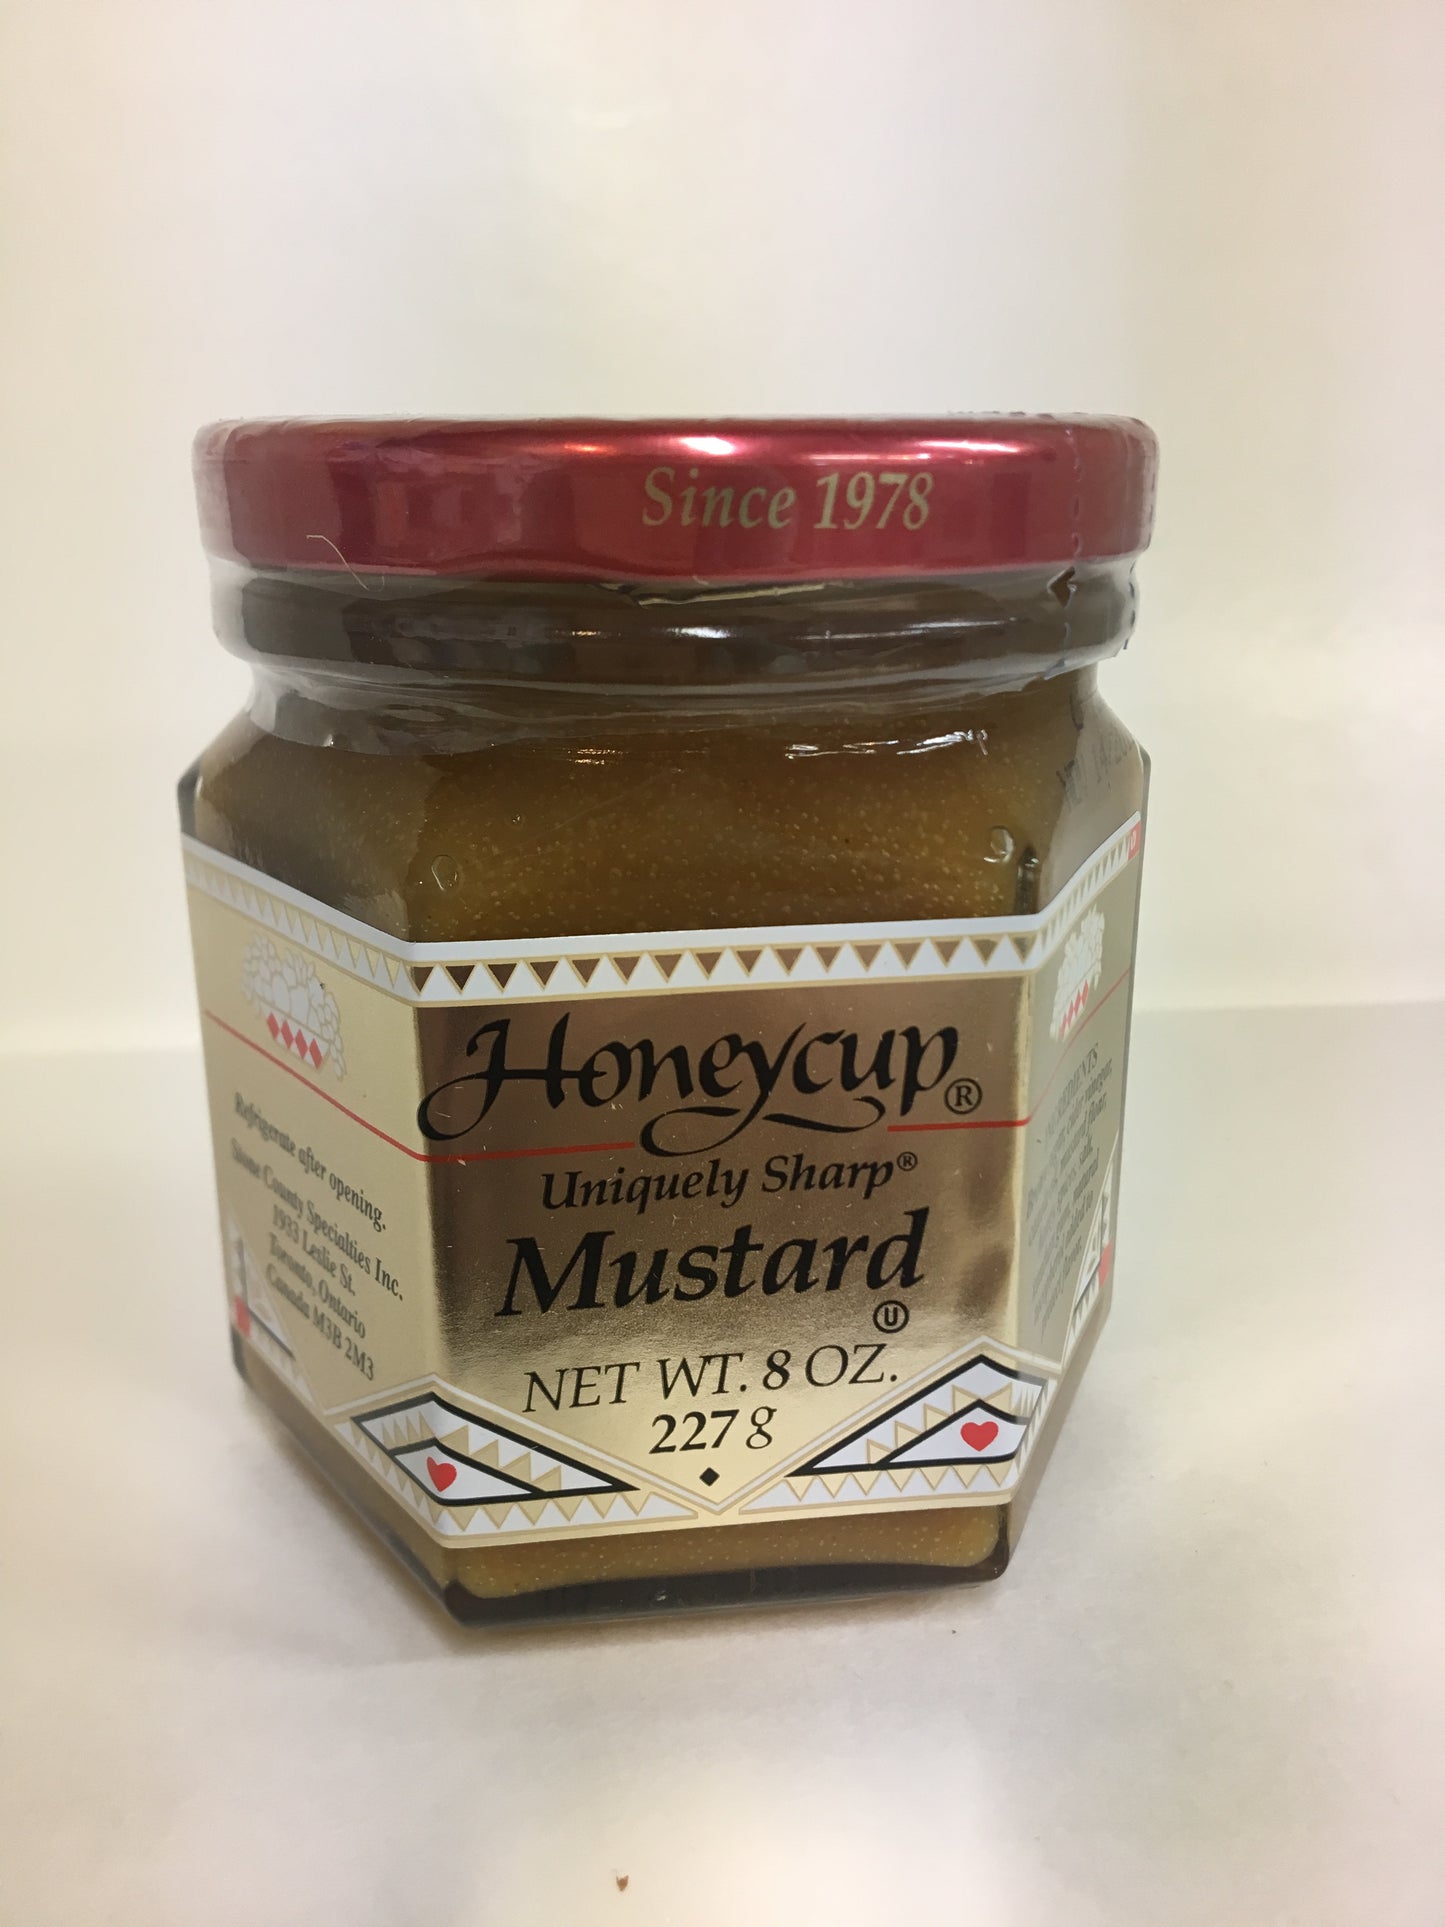 Honeycup Mustards